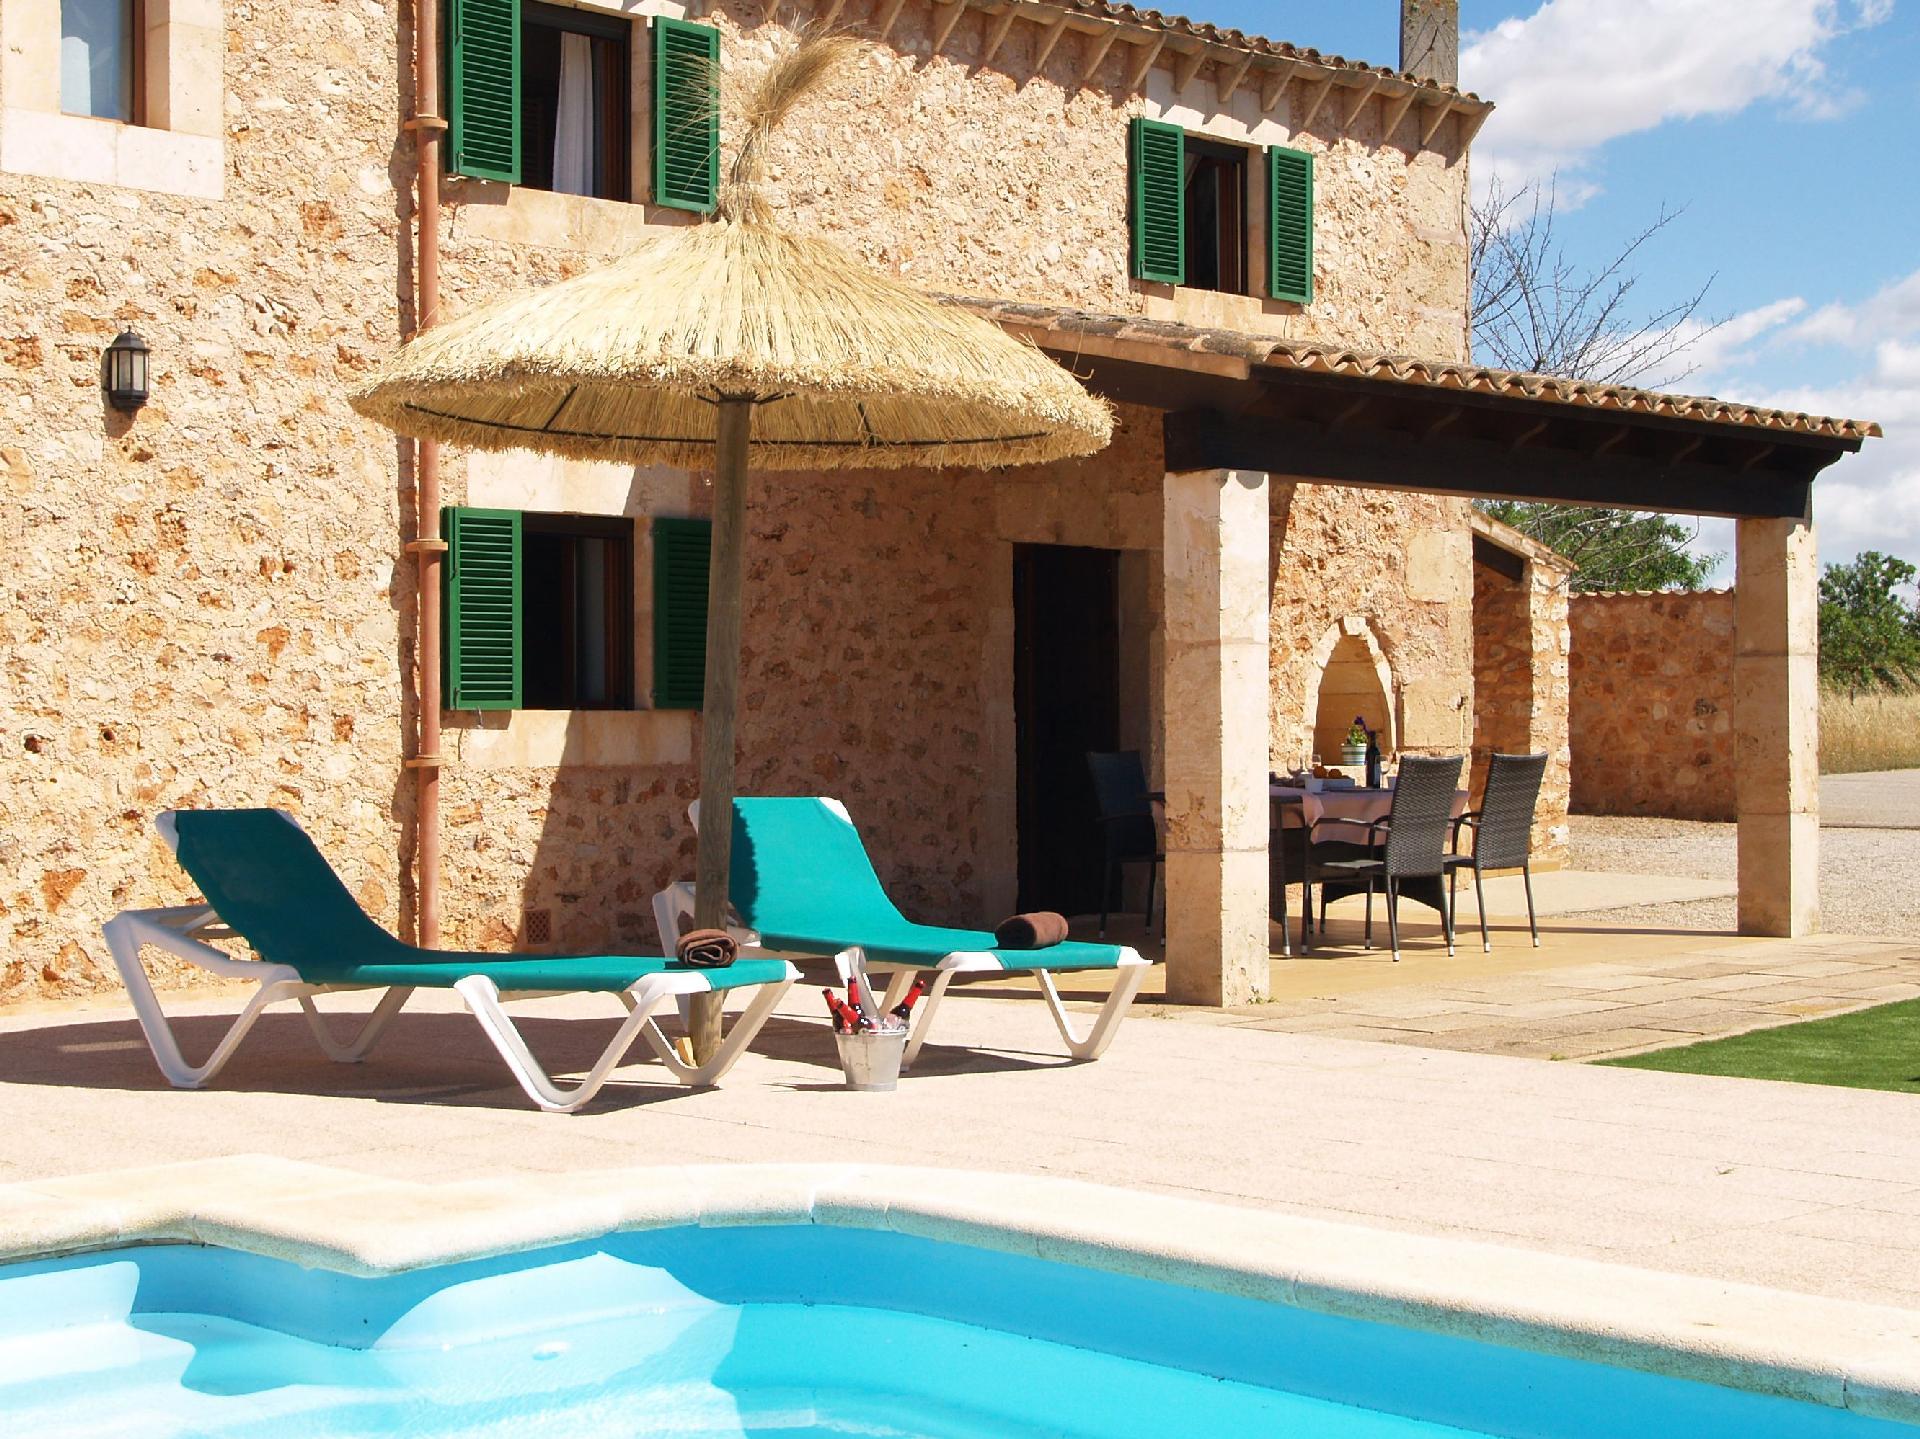 Ferienhaus mit Privatpool für 4 Personen ca.  Ferienhaus in Spanien